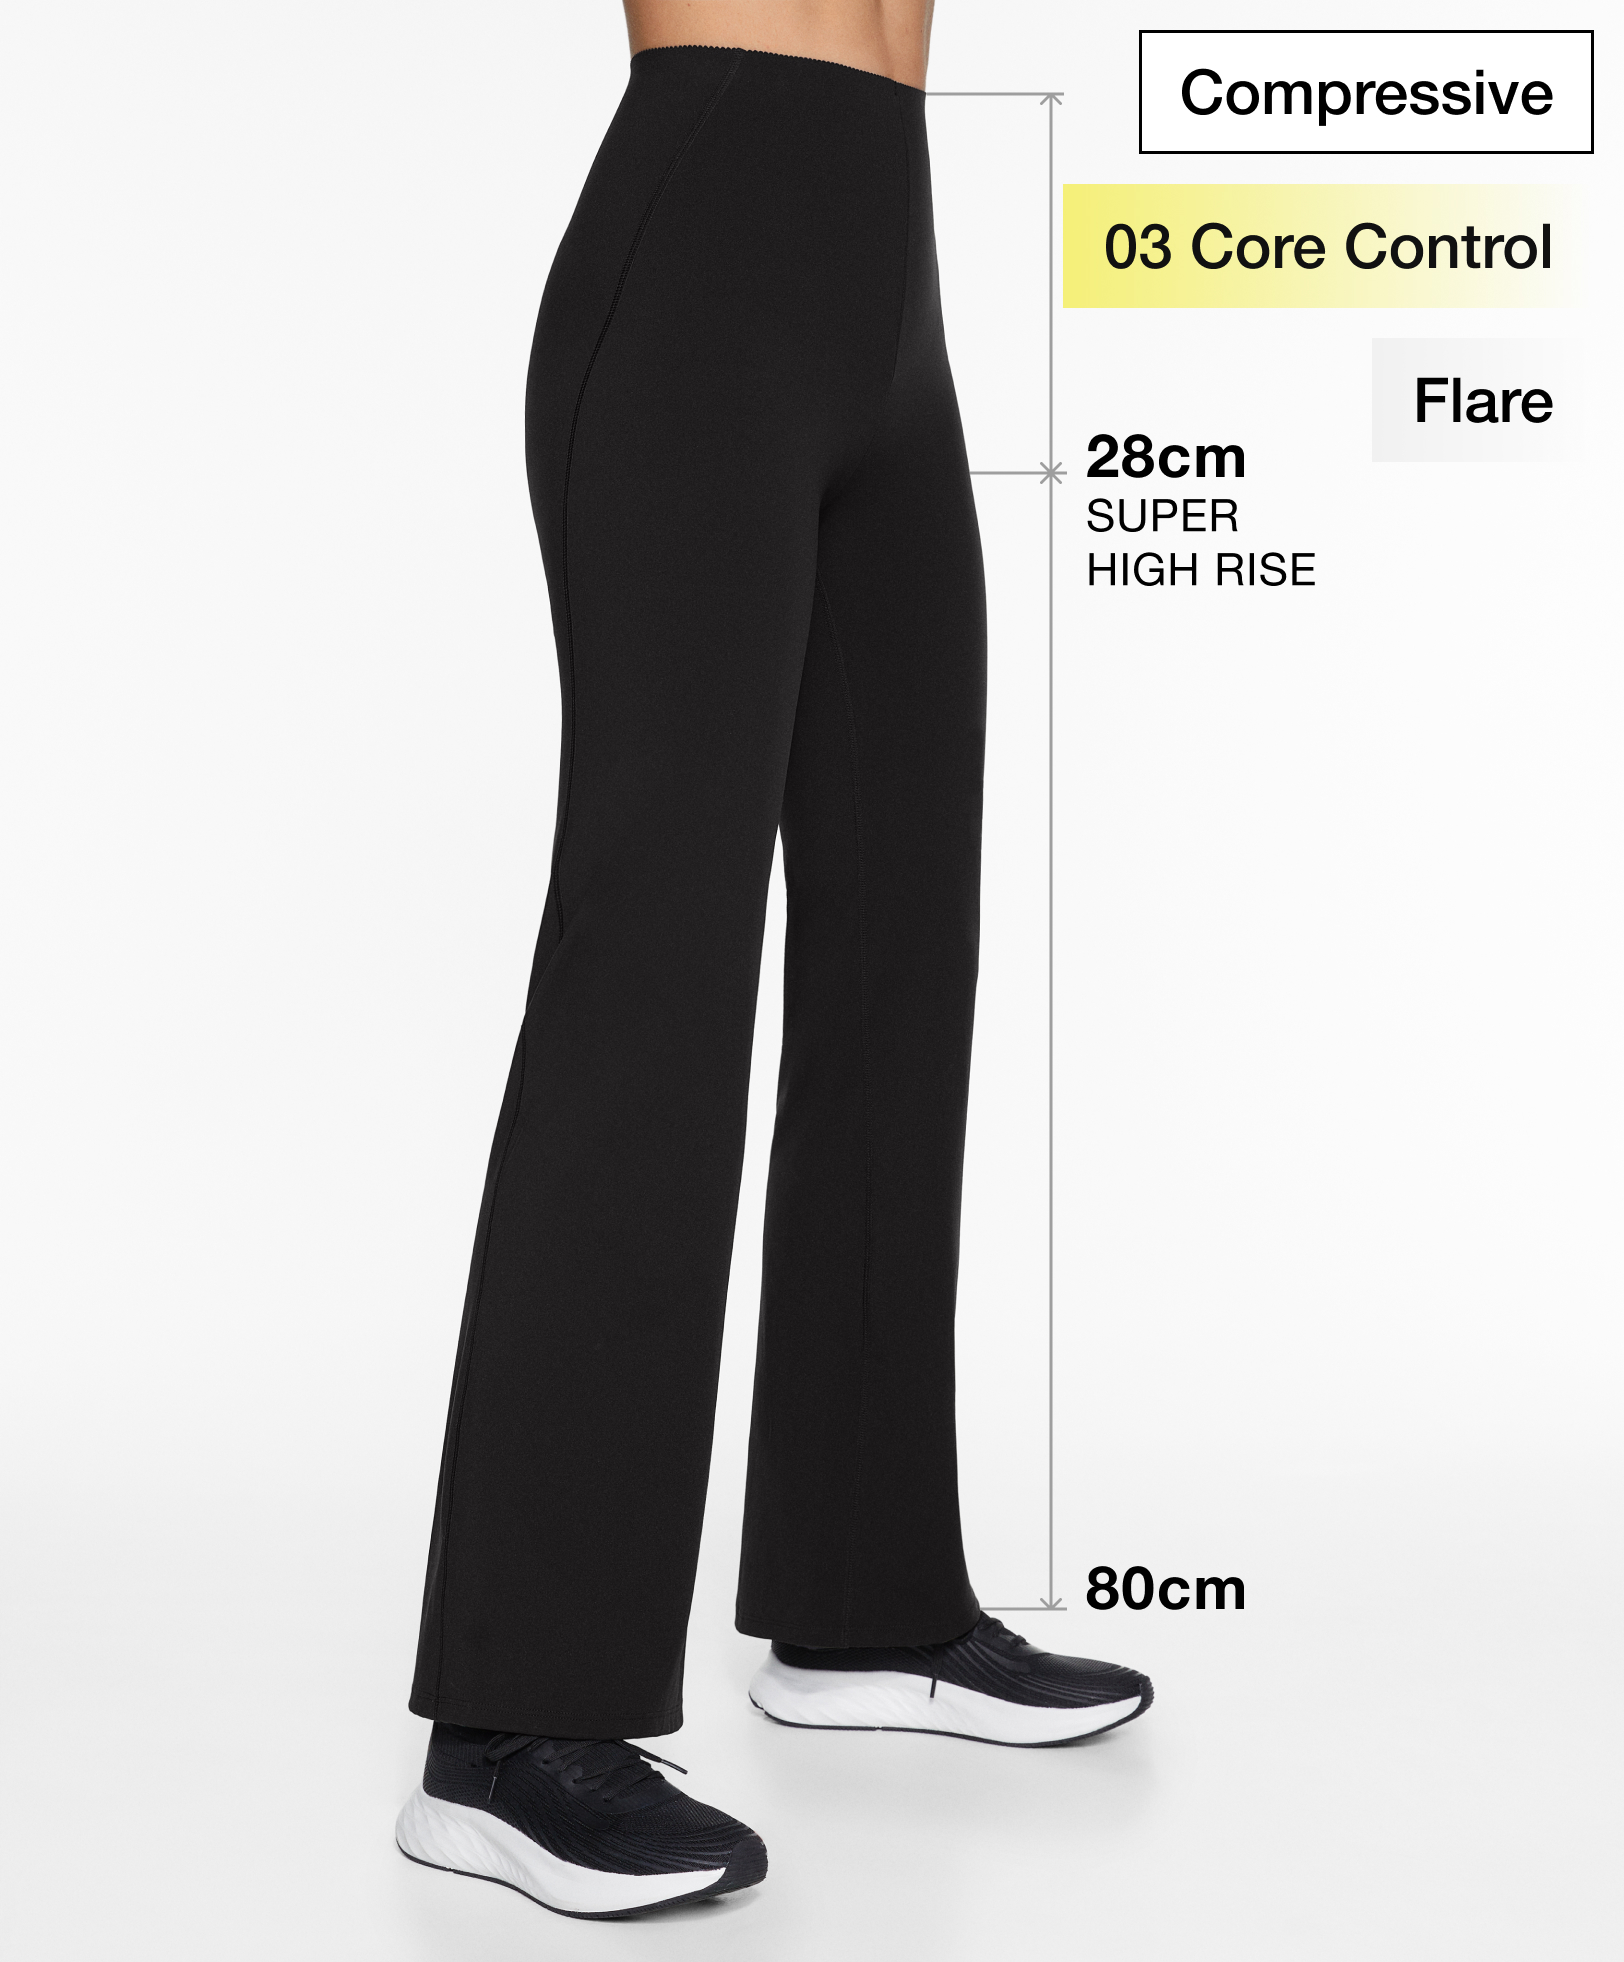 Pantalon flare super high rise compressive core control